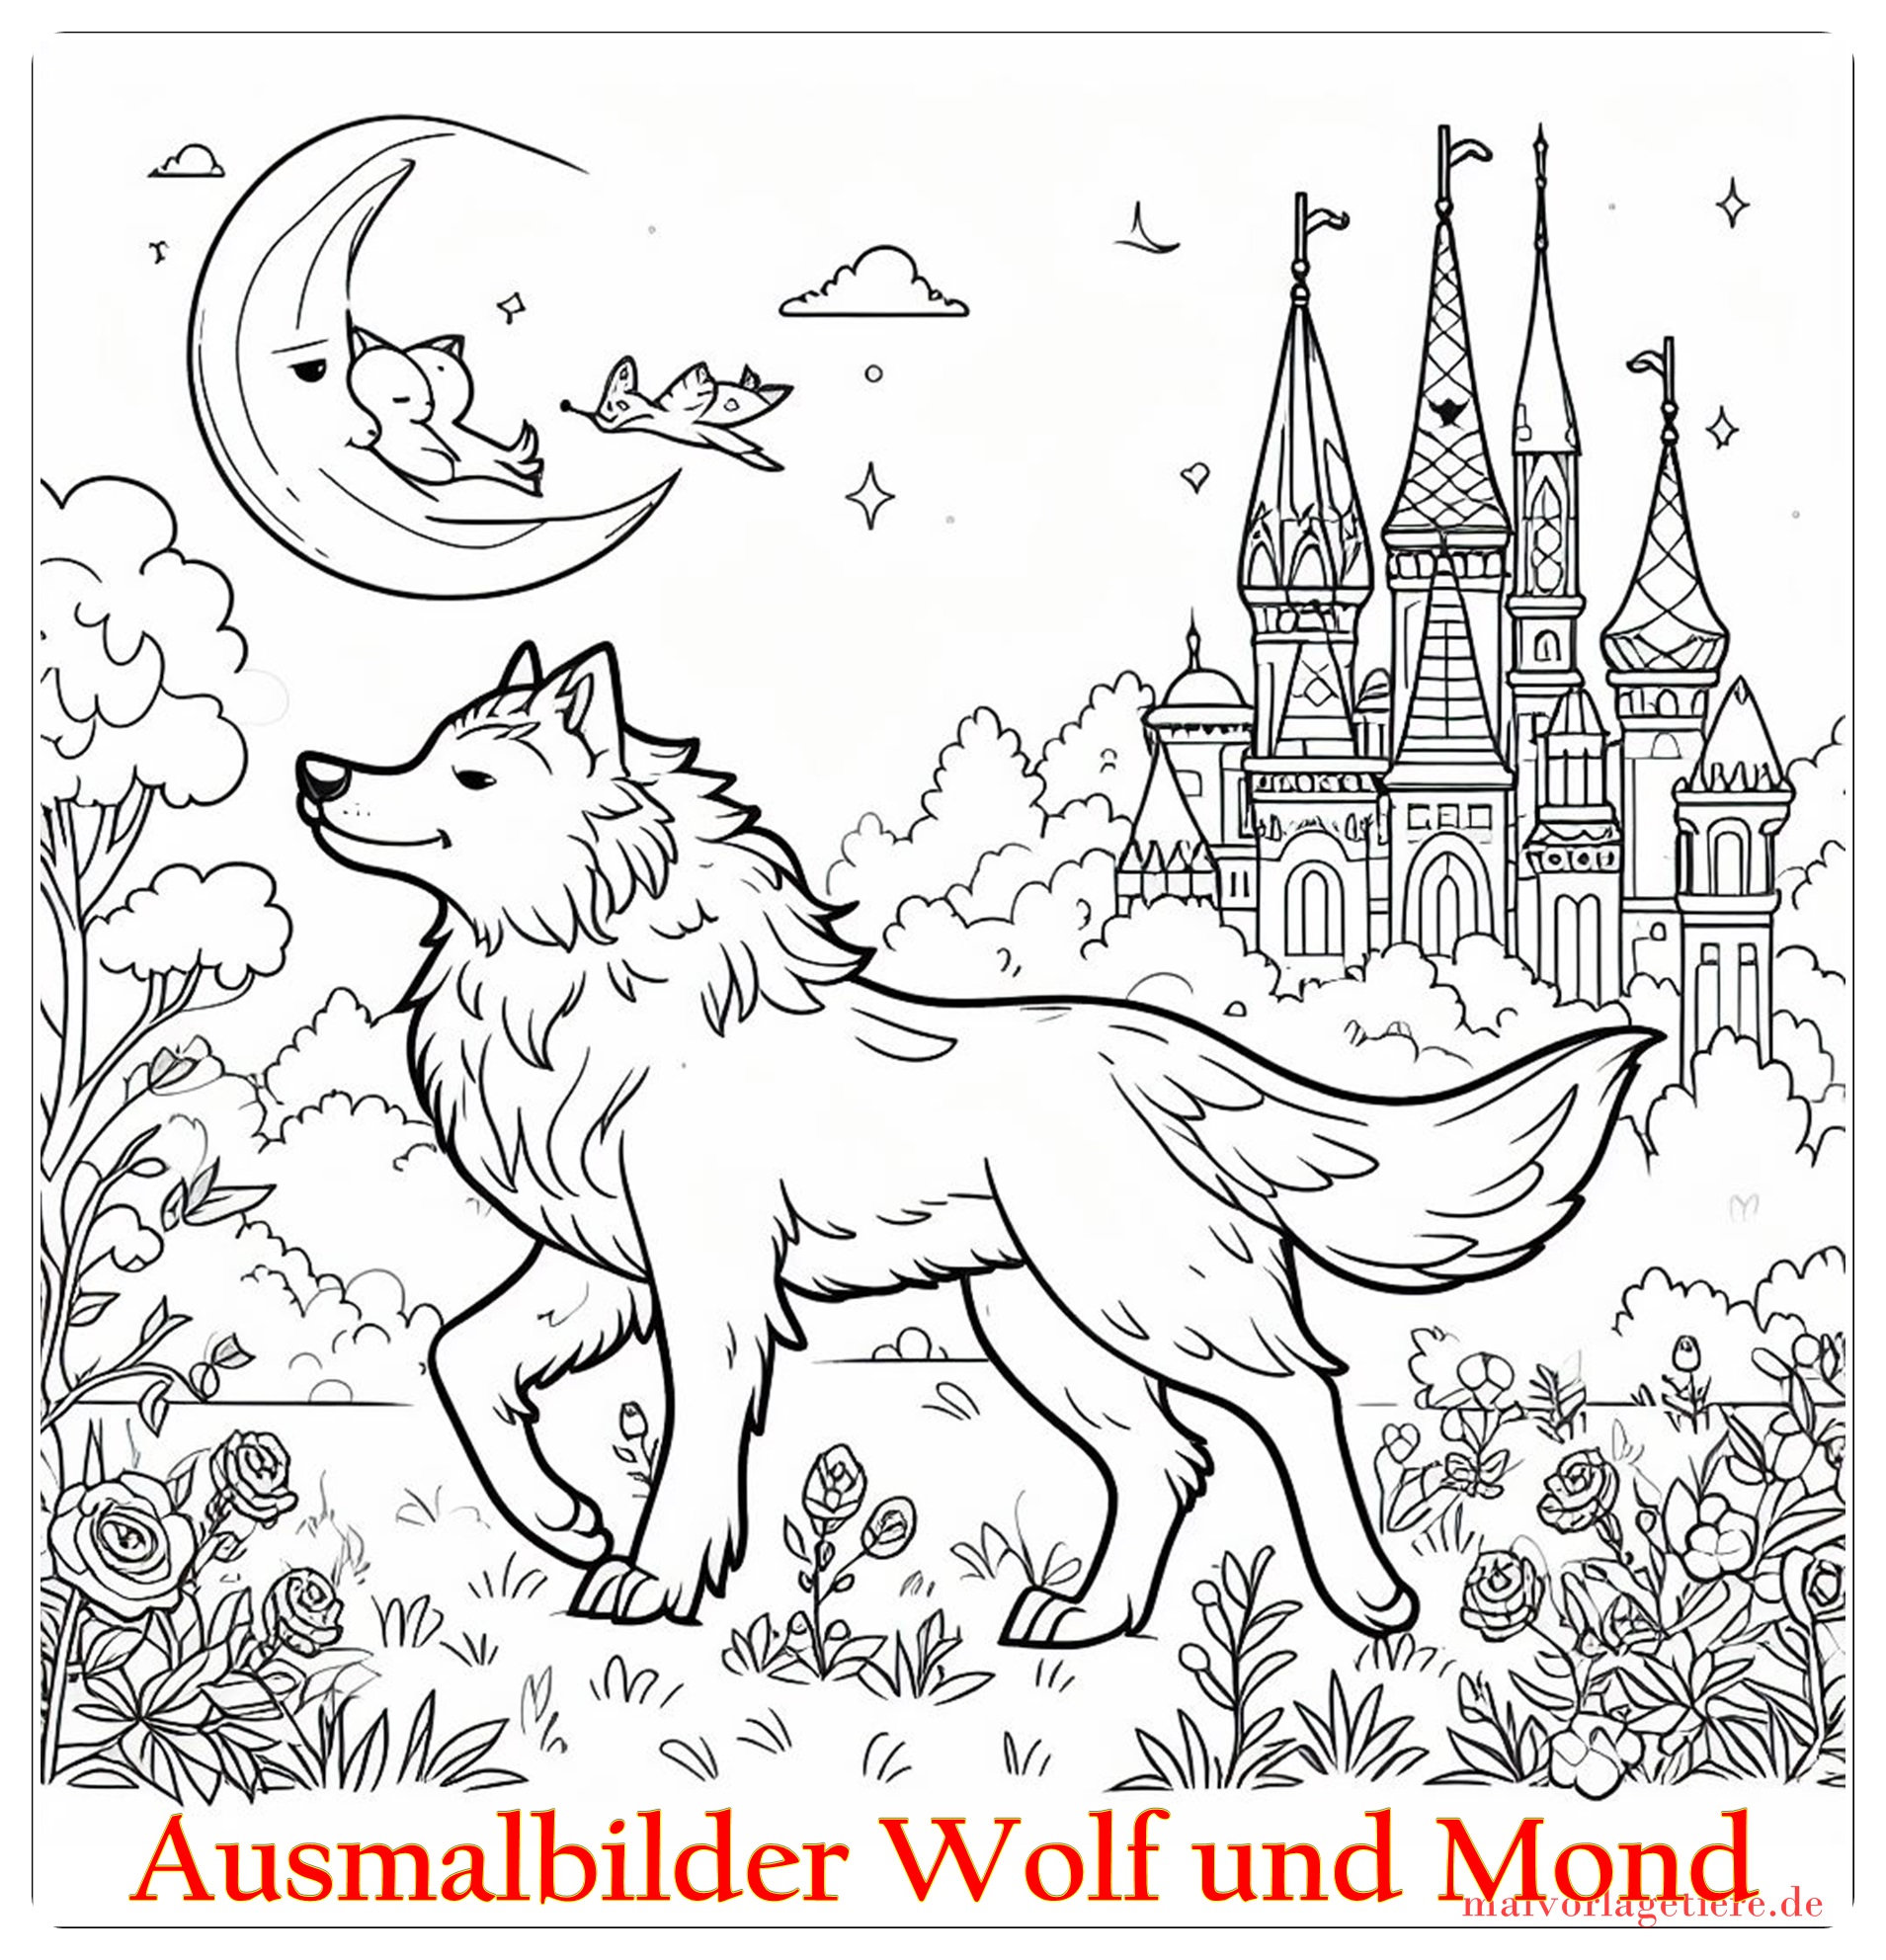 Ausmalbilder Wolf und Mond 08 by malvorlagetiere